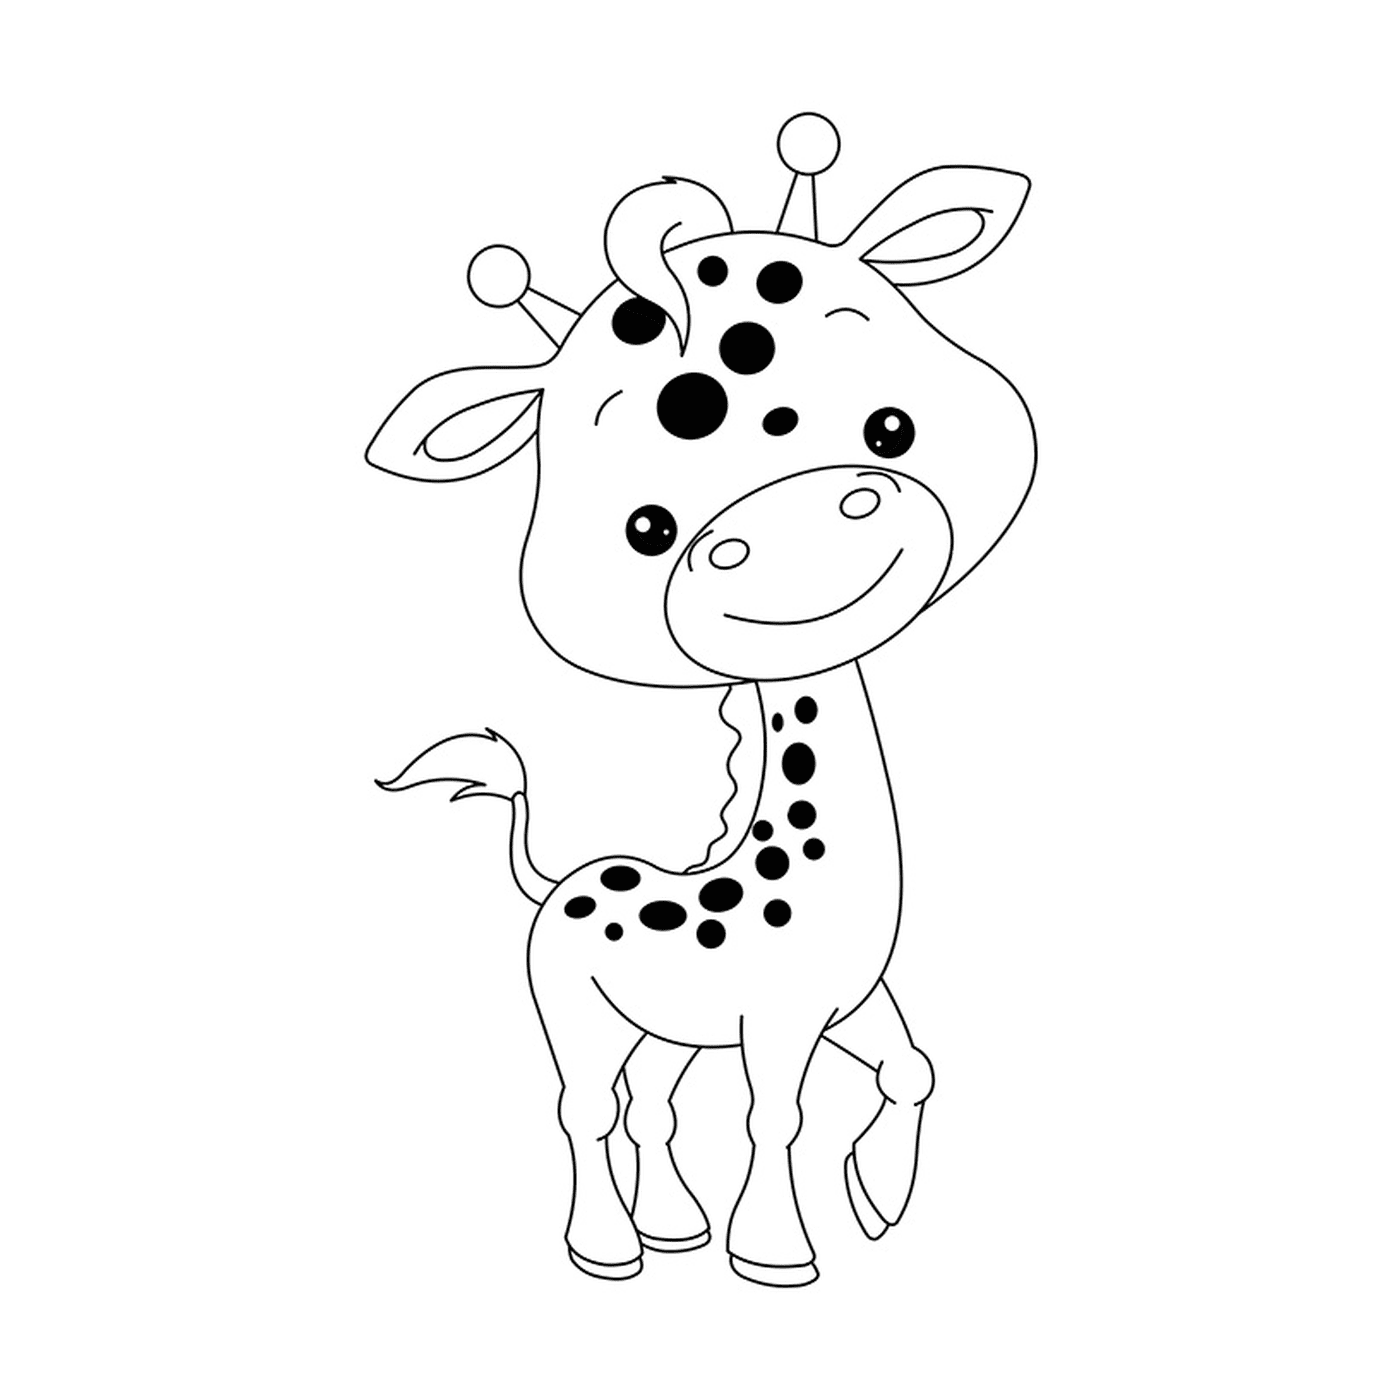   Un bébé girafe 